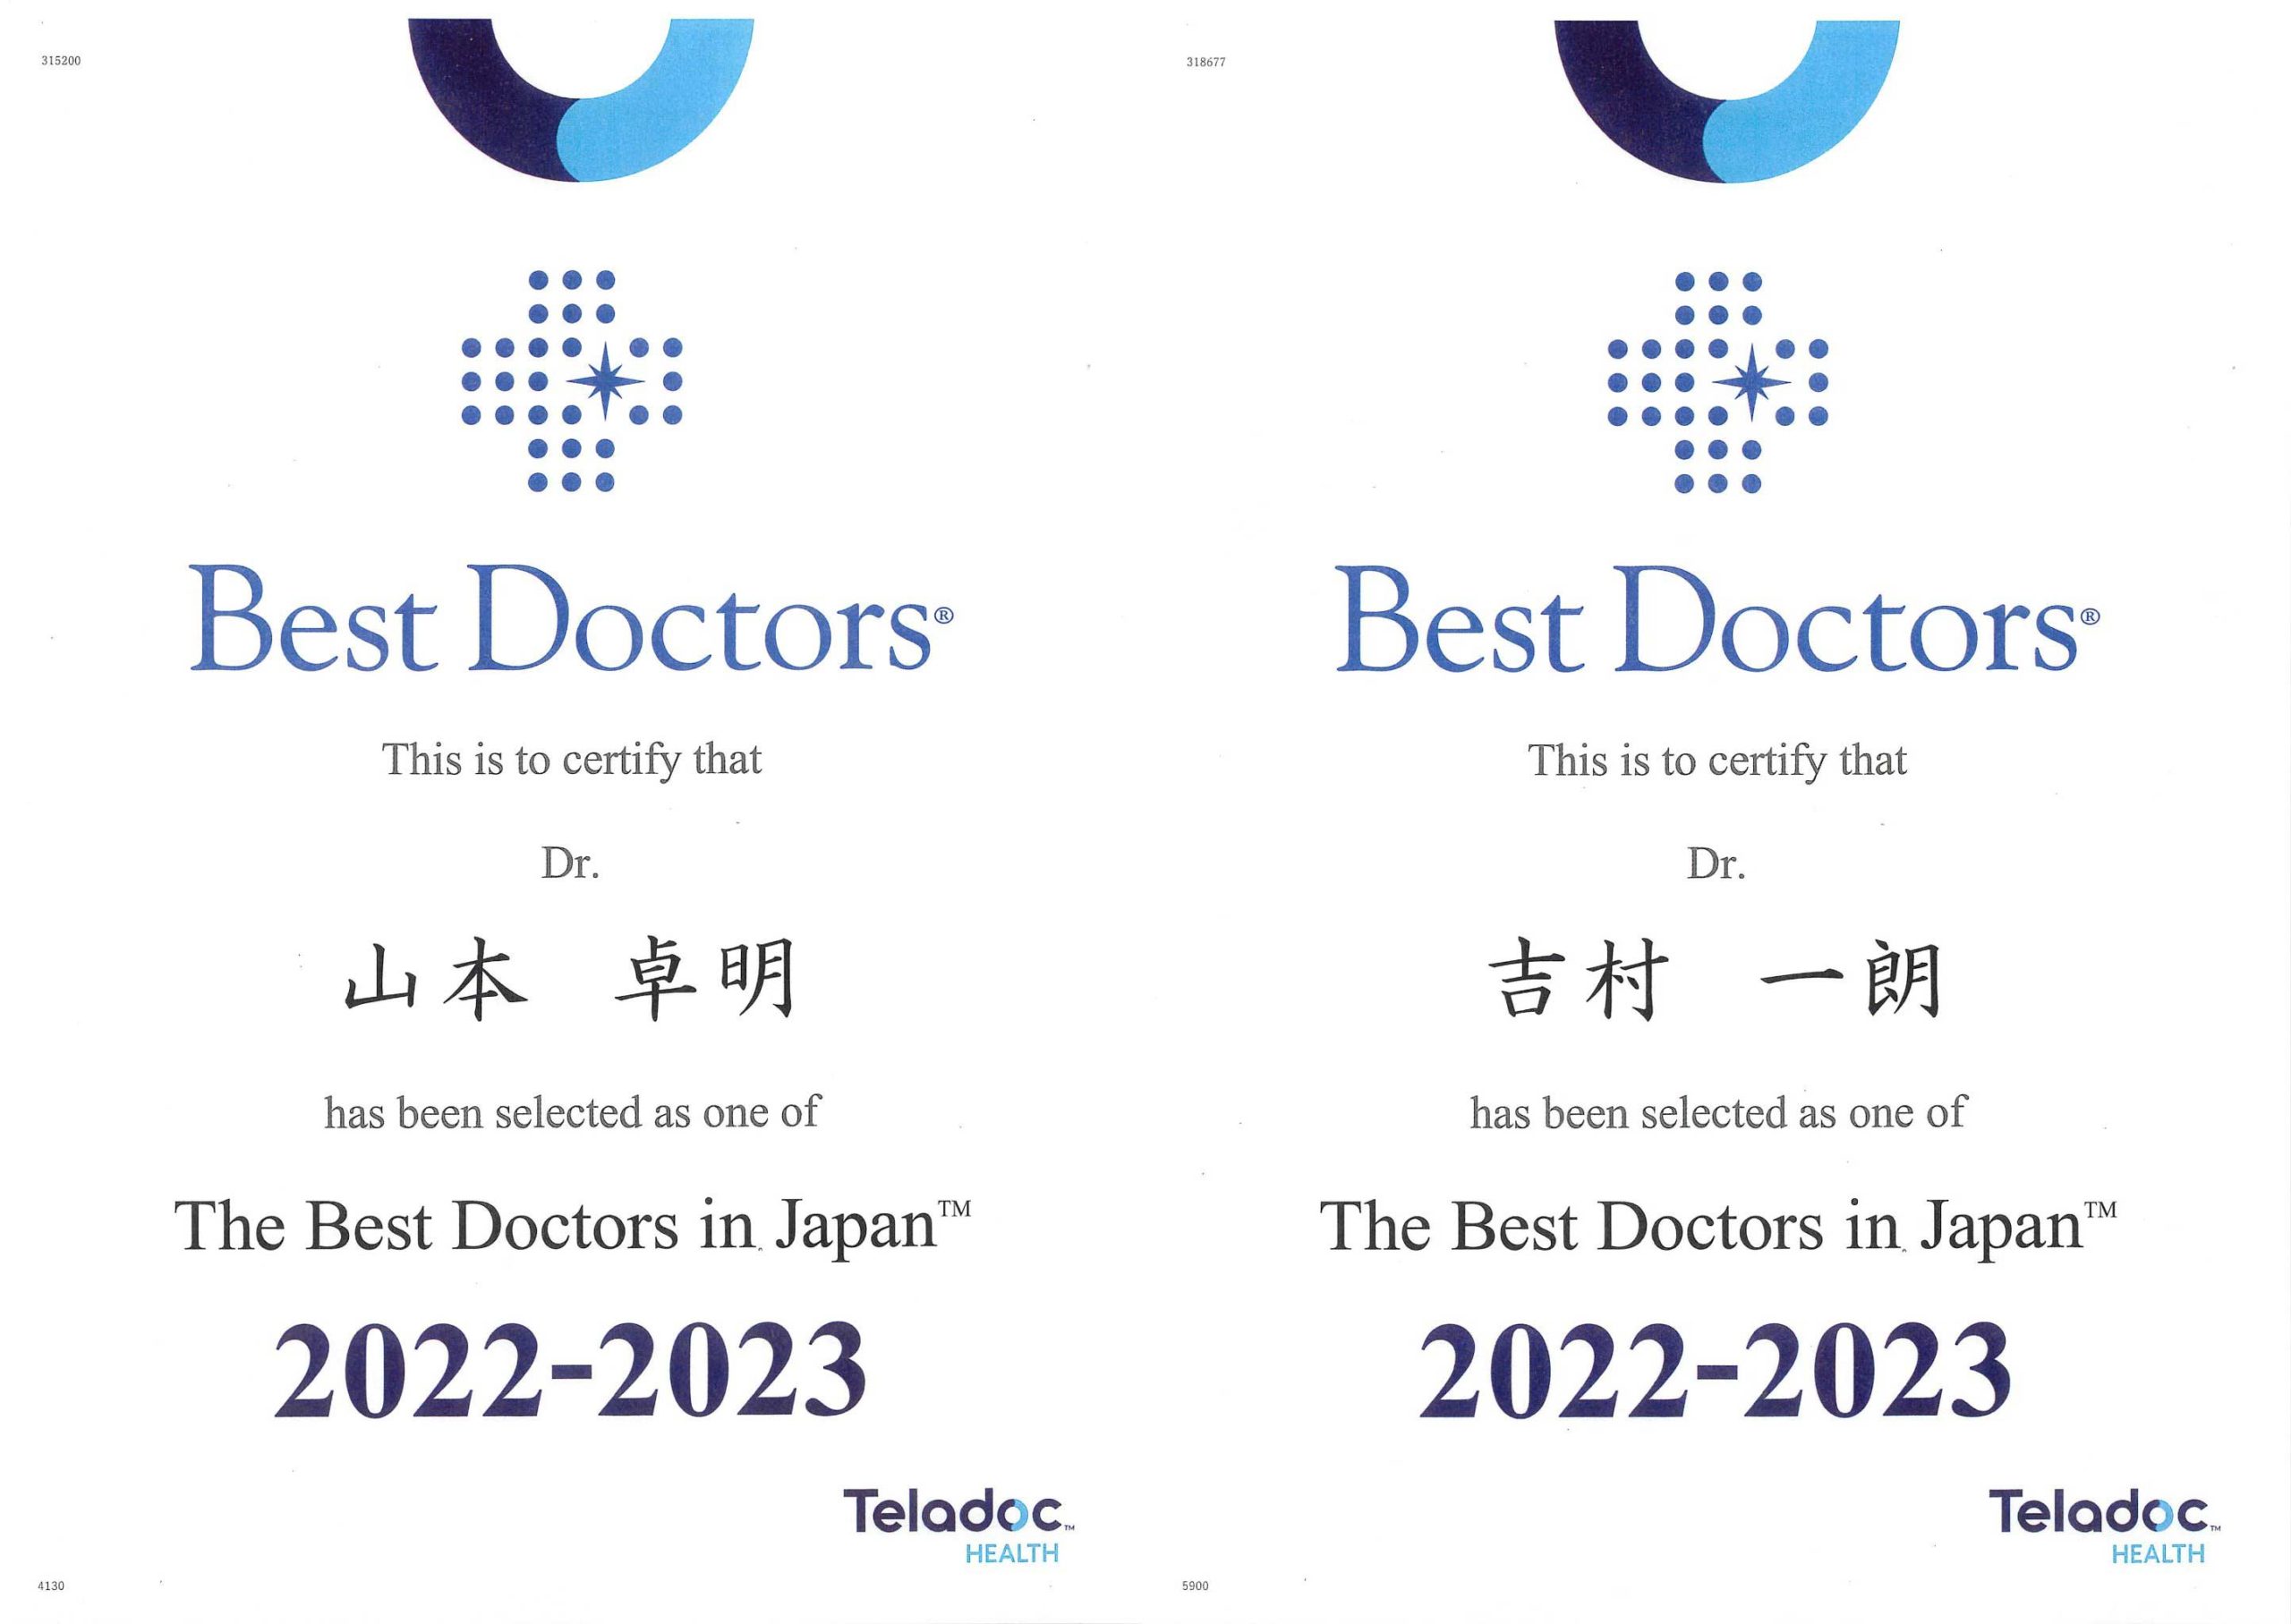 山本卓明 整形外科学教授、吉村一朗 スポーツ科学部教授が、医師同士の評価によって選ばれる“The Best Doctors in Japan”に、Best Doctors®社から選出されました。